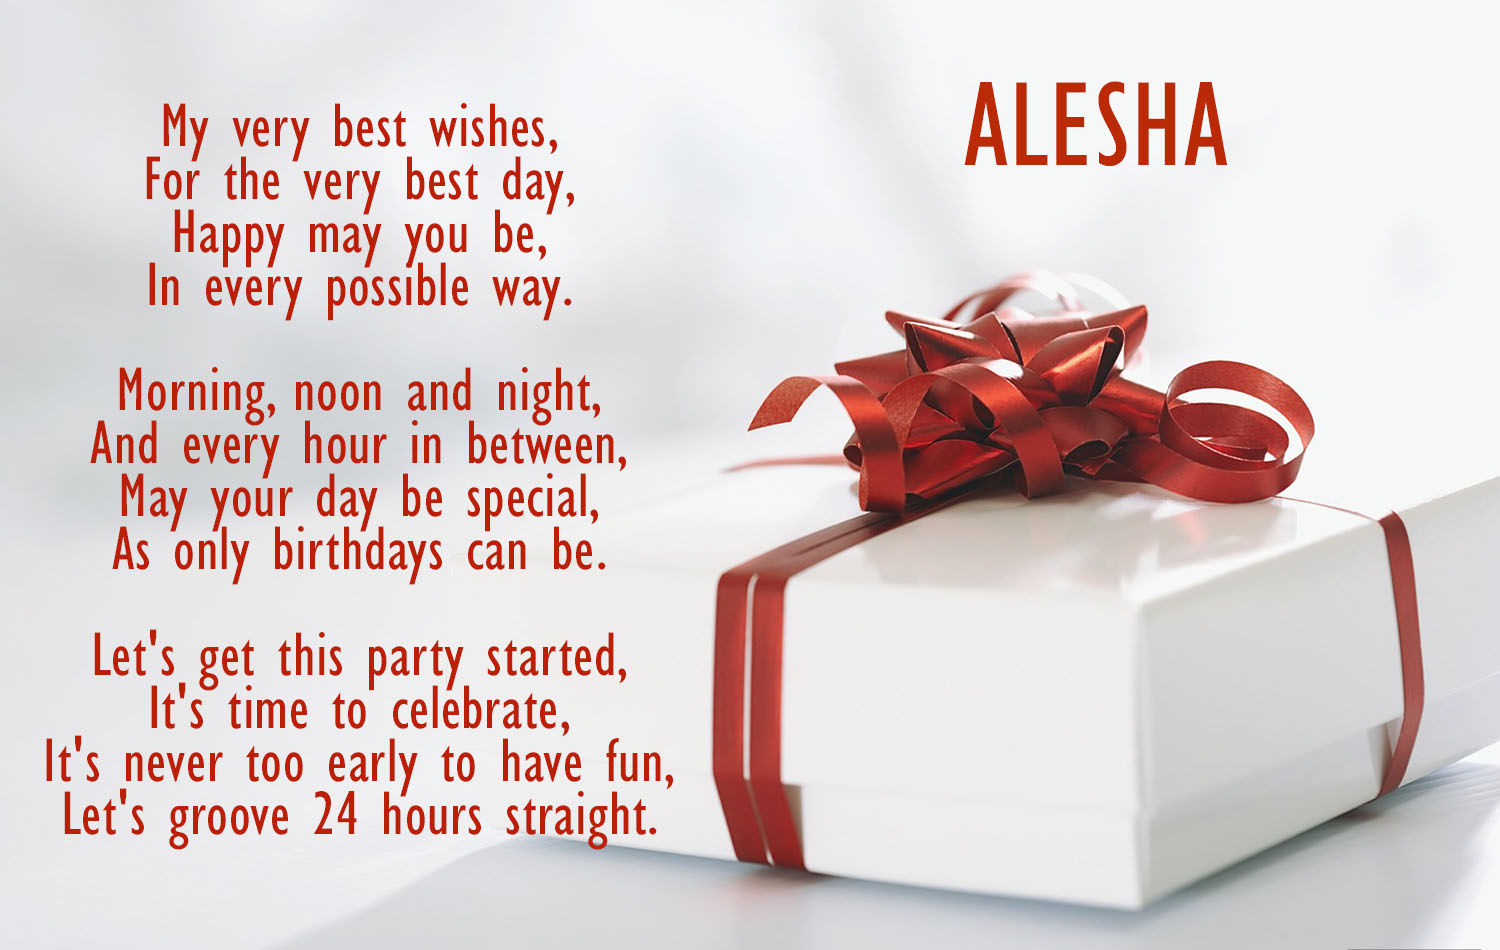 Birthday poems for ALESHA!